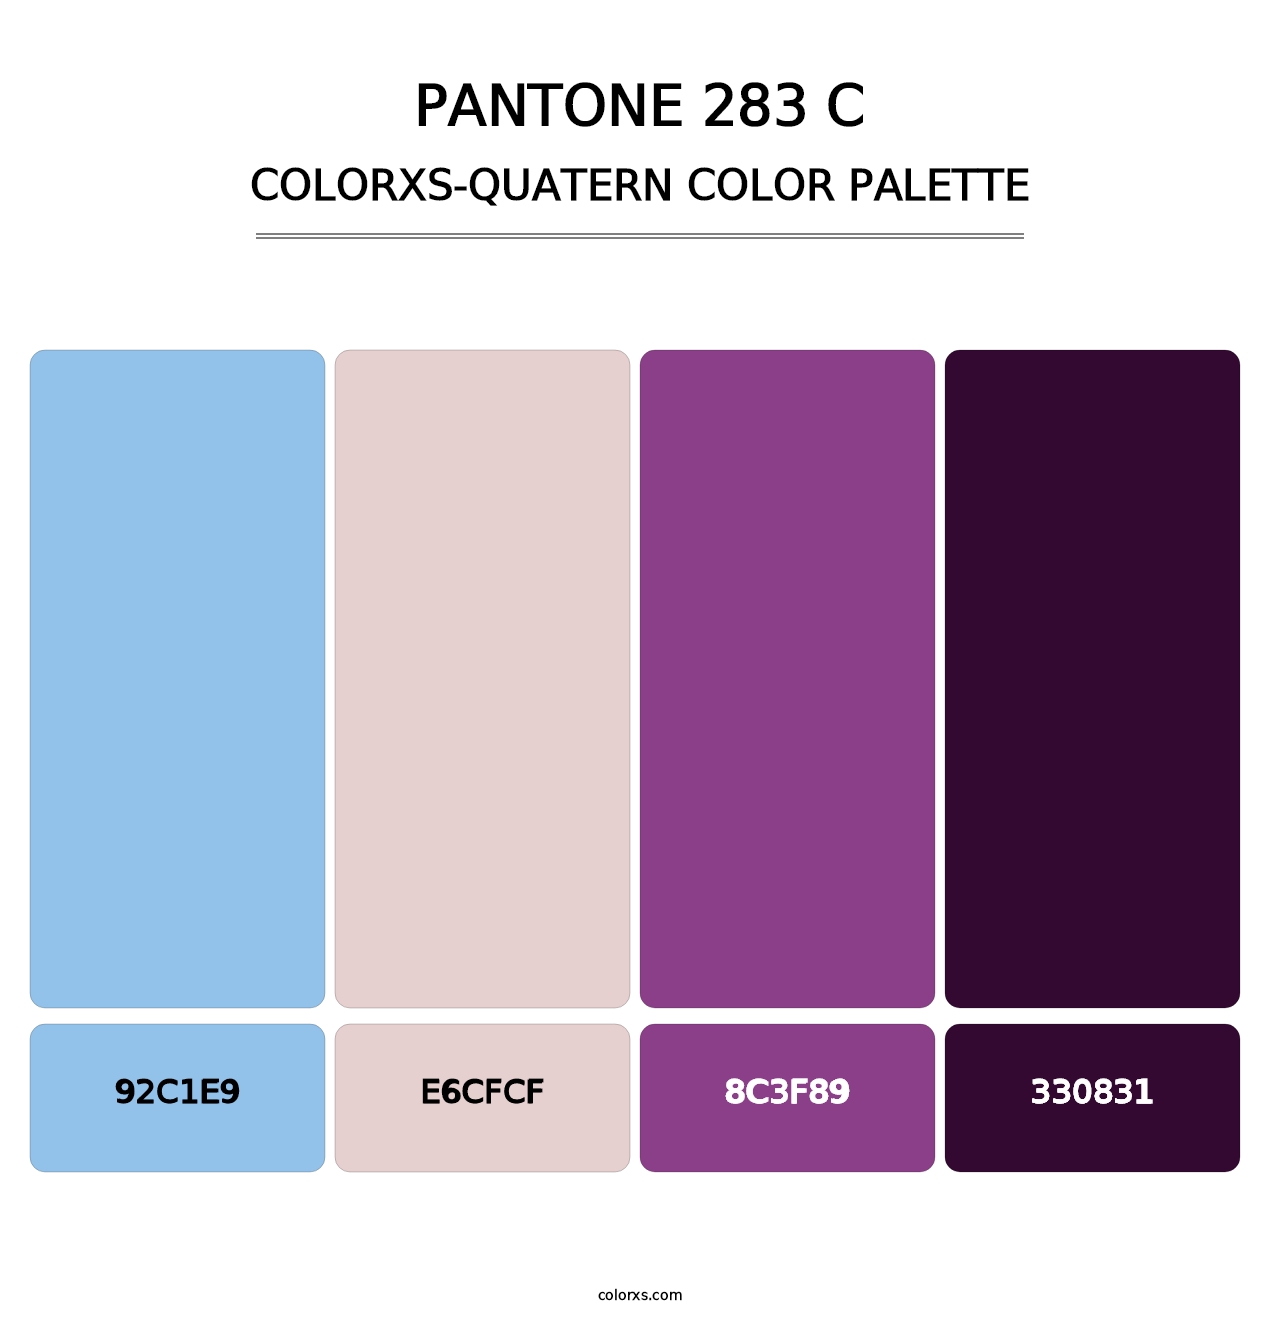 PANTONE 283 C - Colorxs Quatern Palette